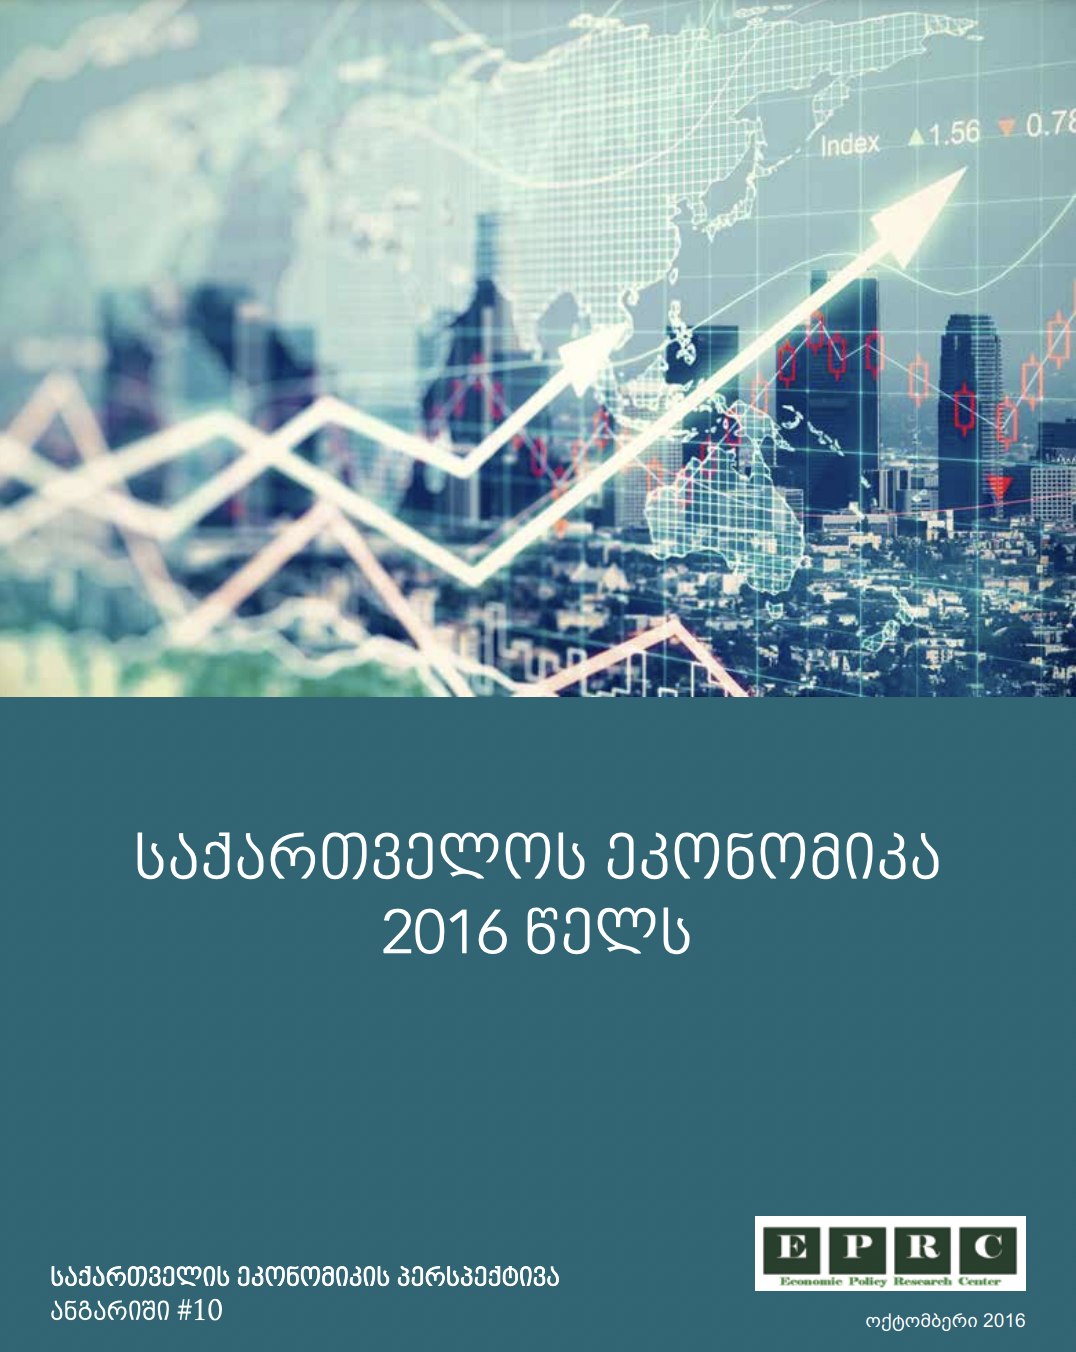 საქართველოს ეკონომიკა 2016 წელს